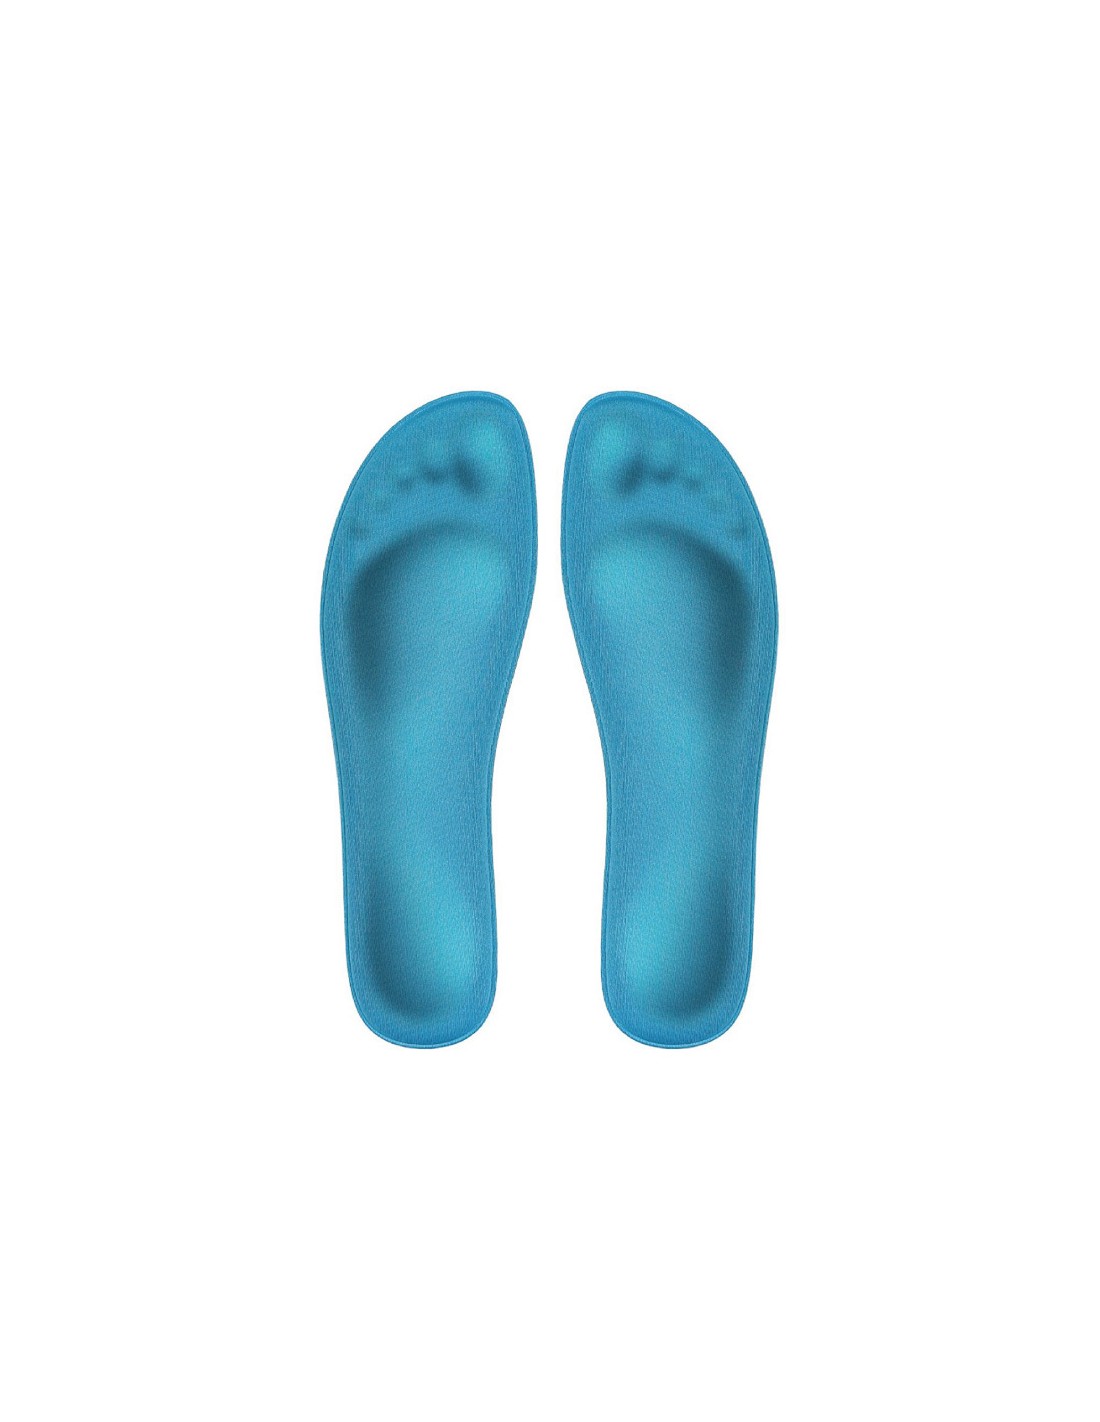 solette scarpe in lattice memory foam ortopedica e comoda